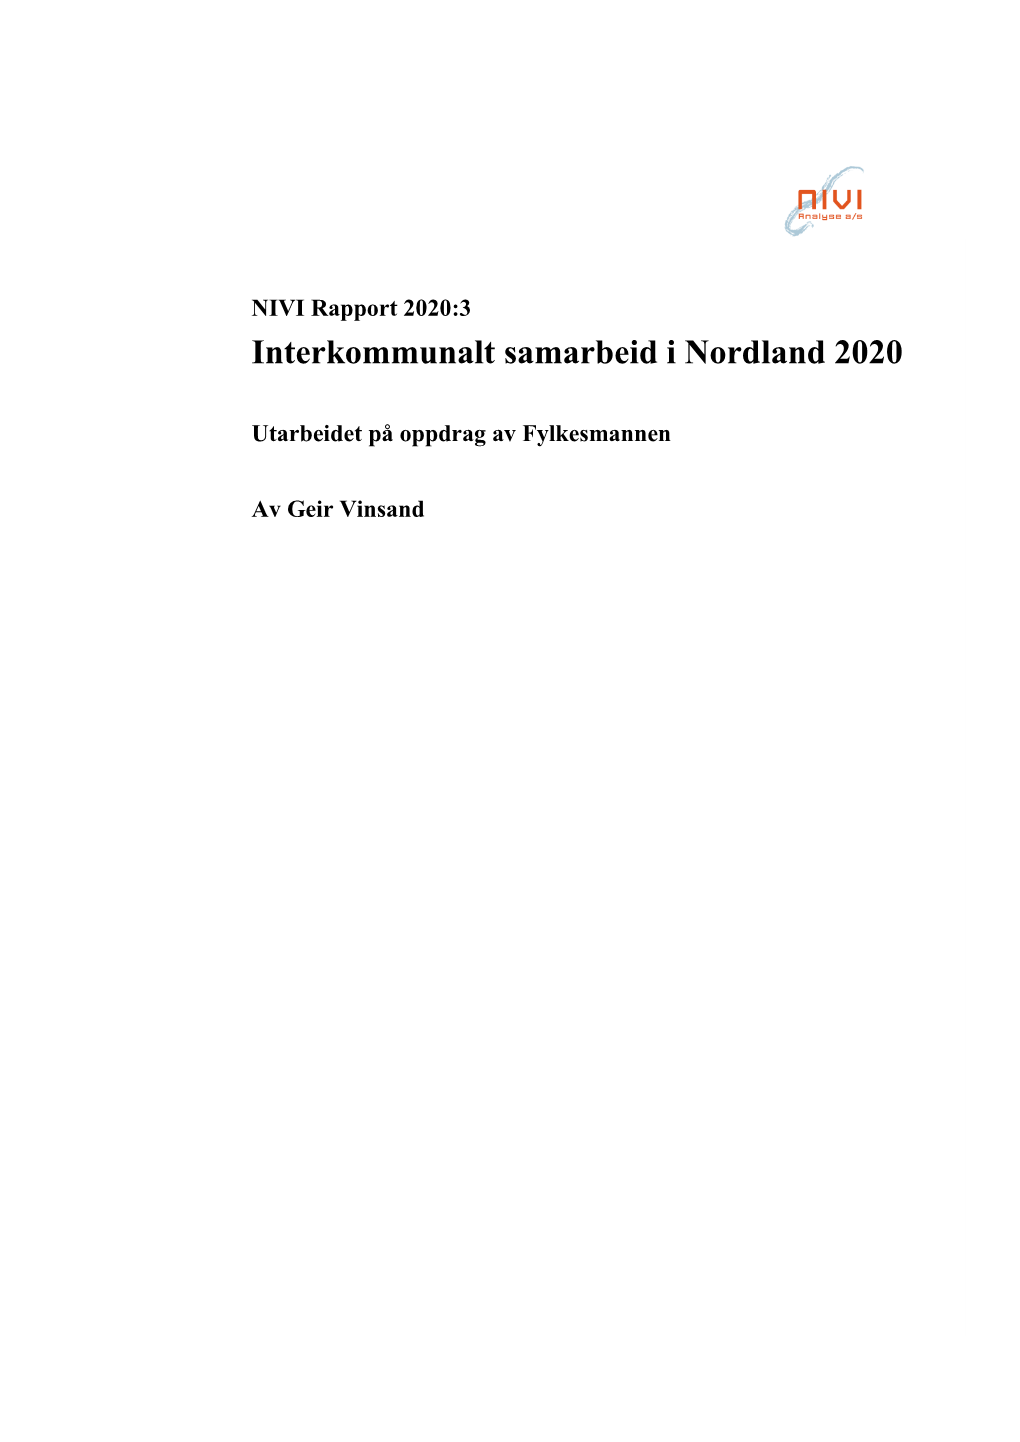 Interkommunalt Samarbeid I Nordland 2020 (NIVI Rapport 2020:3)